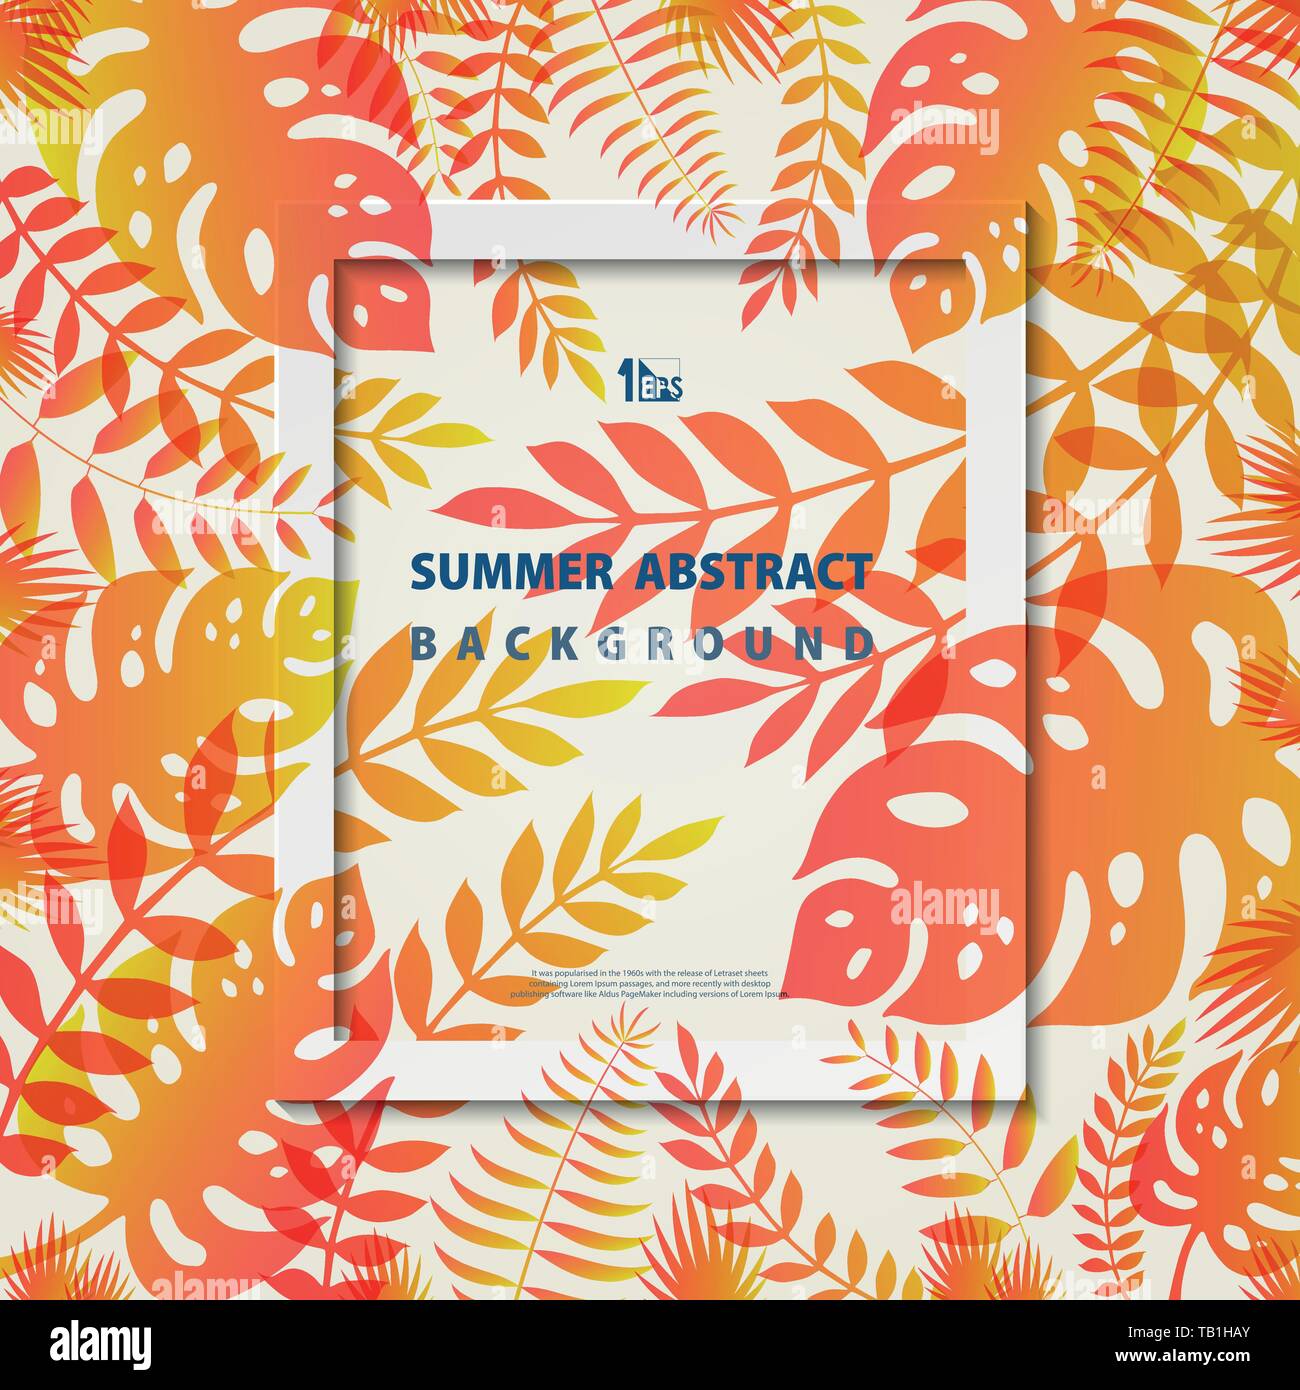 Abstrakte Sommer frame Blätter Natur lebende Korallen und gelben Farben Hintergrund. Sie können für den Cover Design, Natur Vorlage, Design-Vorlage verwenden. Stock Vektor